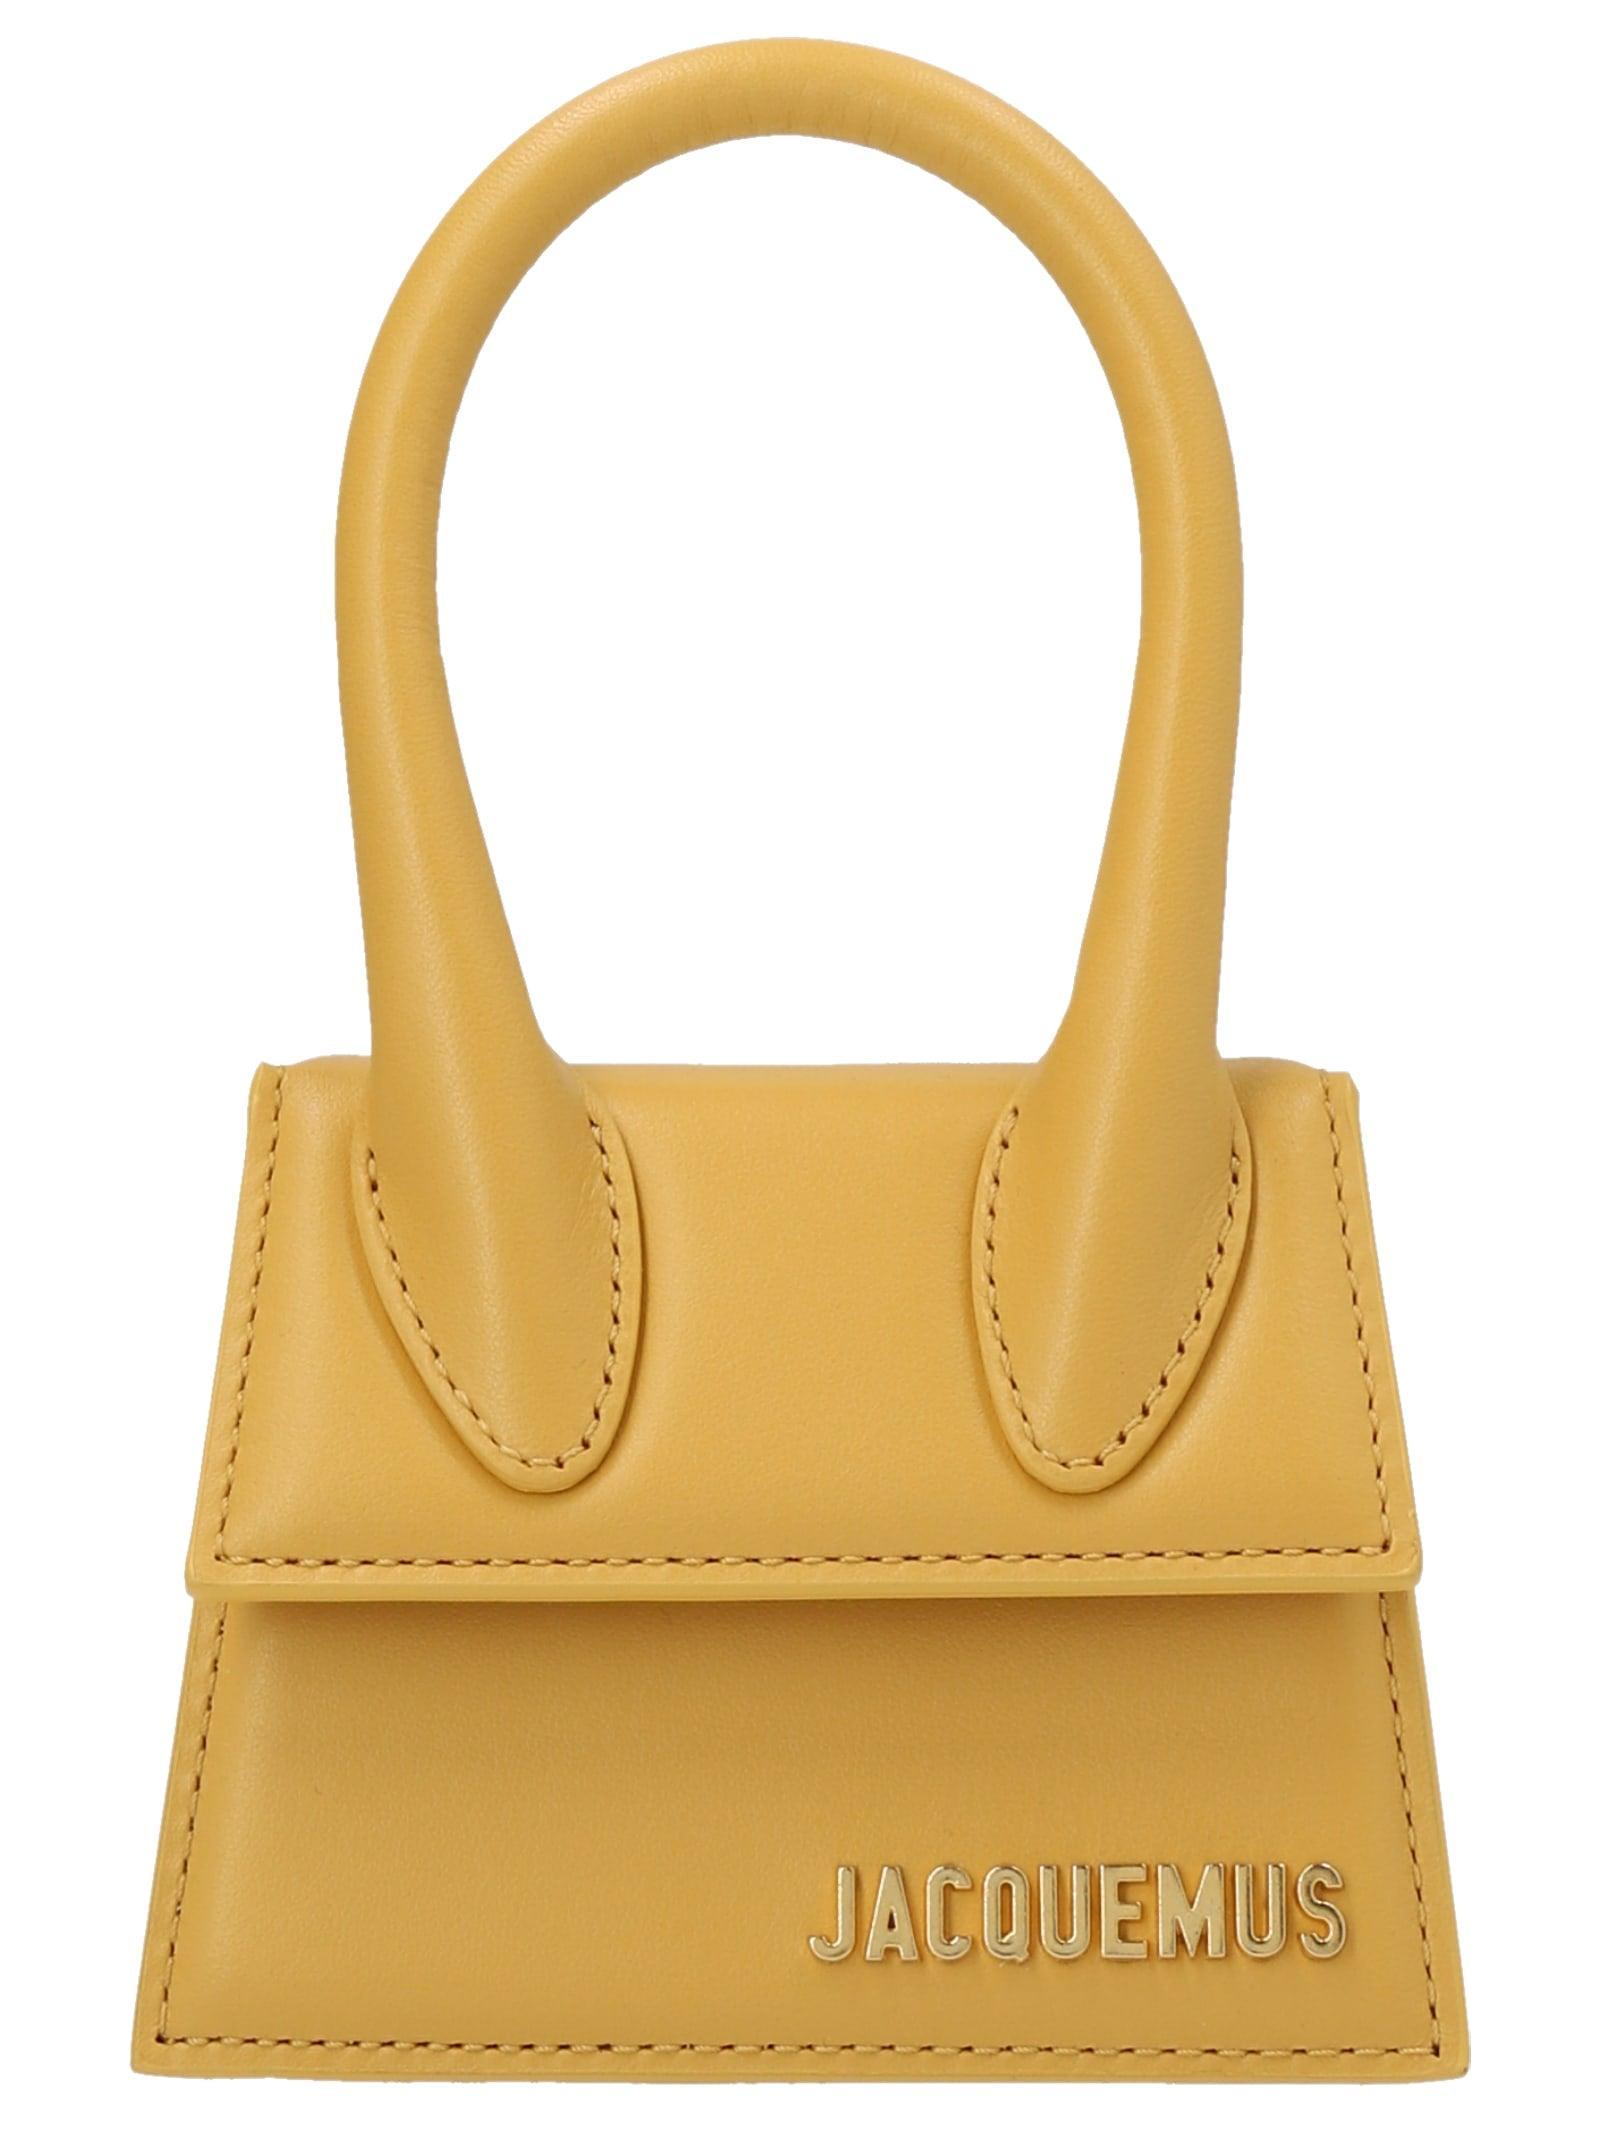 Jacquemus Le Chiquito Mini Handbag in Yellow | Lyst